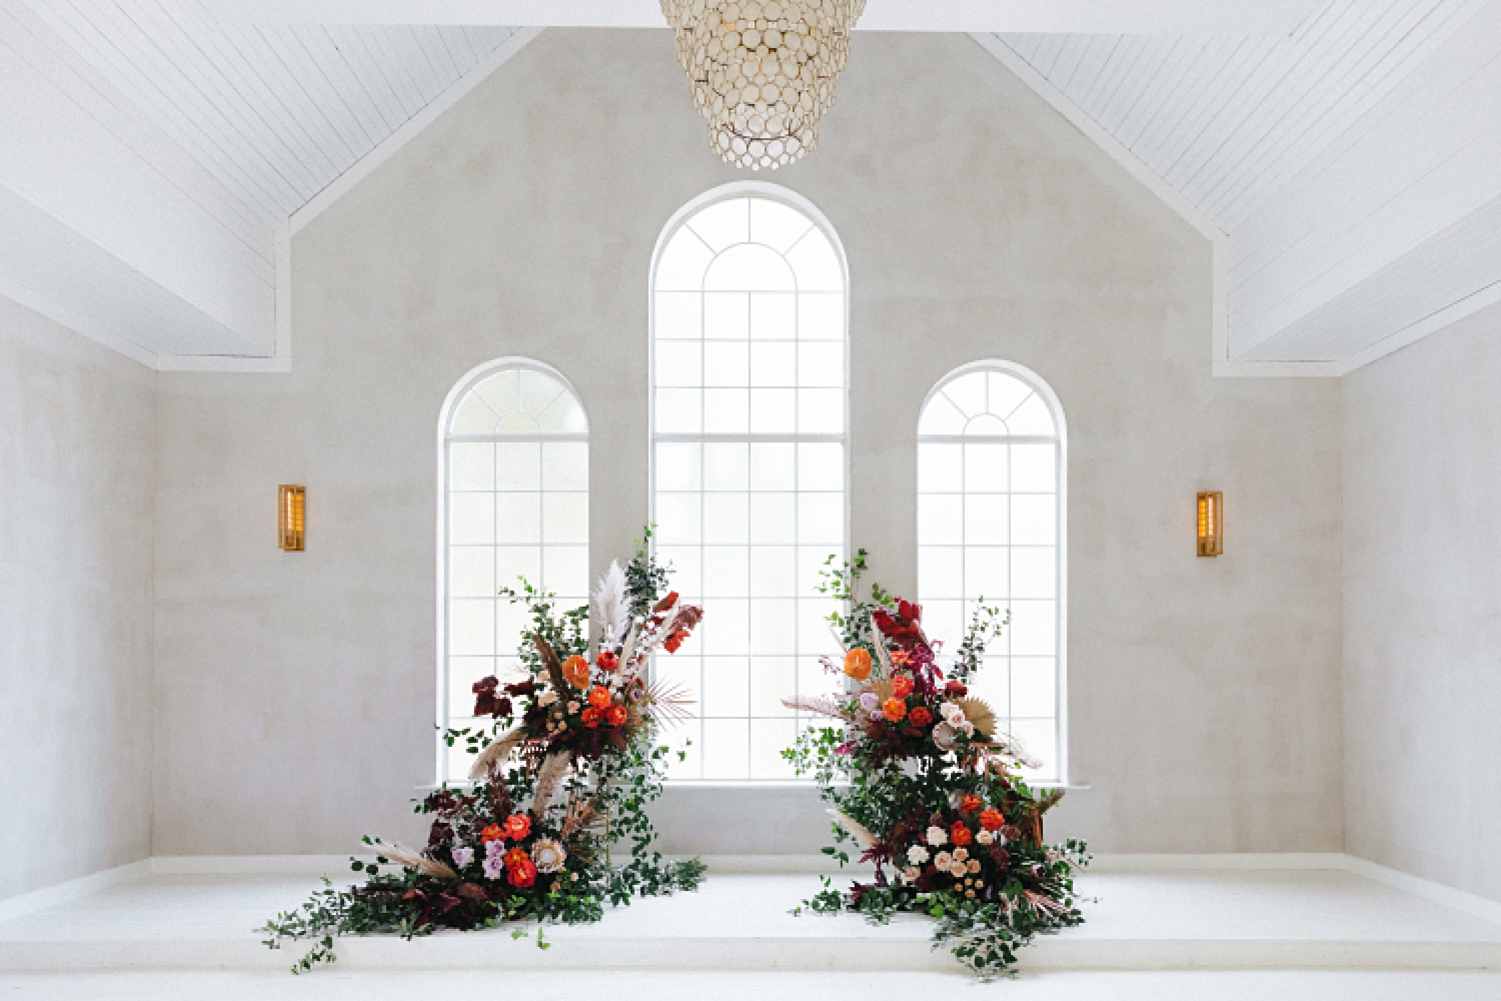  flowers wedding altar floral instillation orange purple Emerson white chapel windows